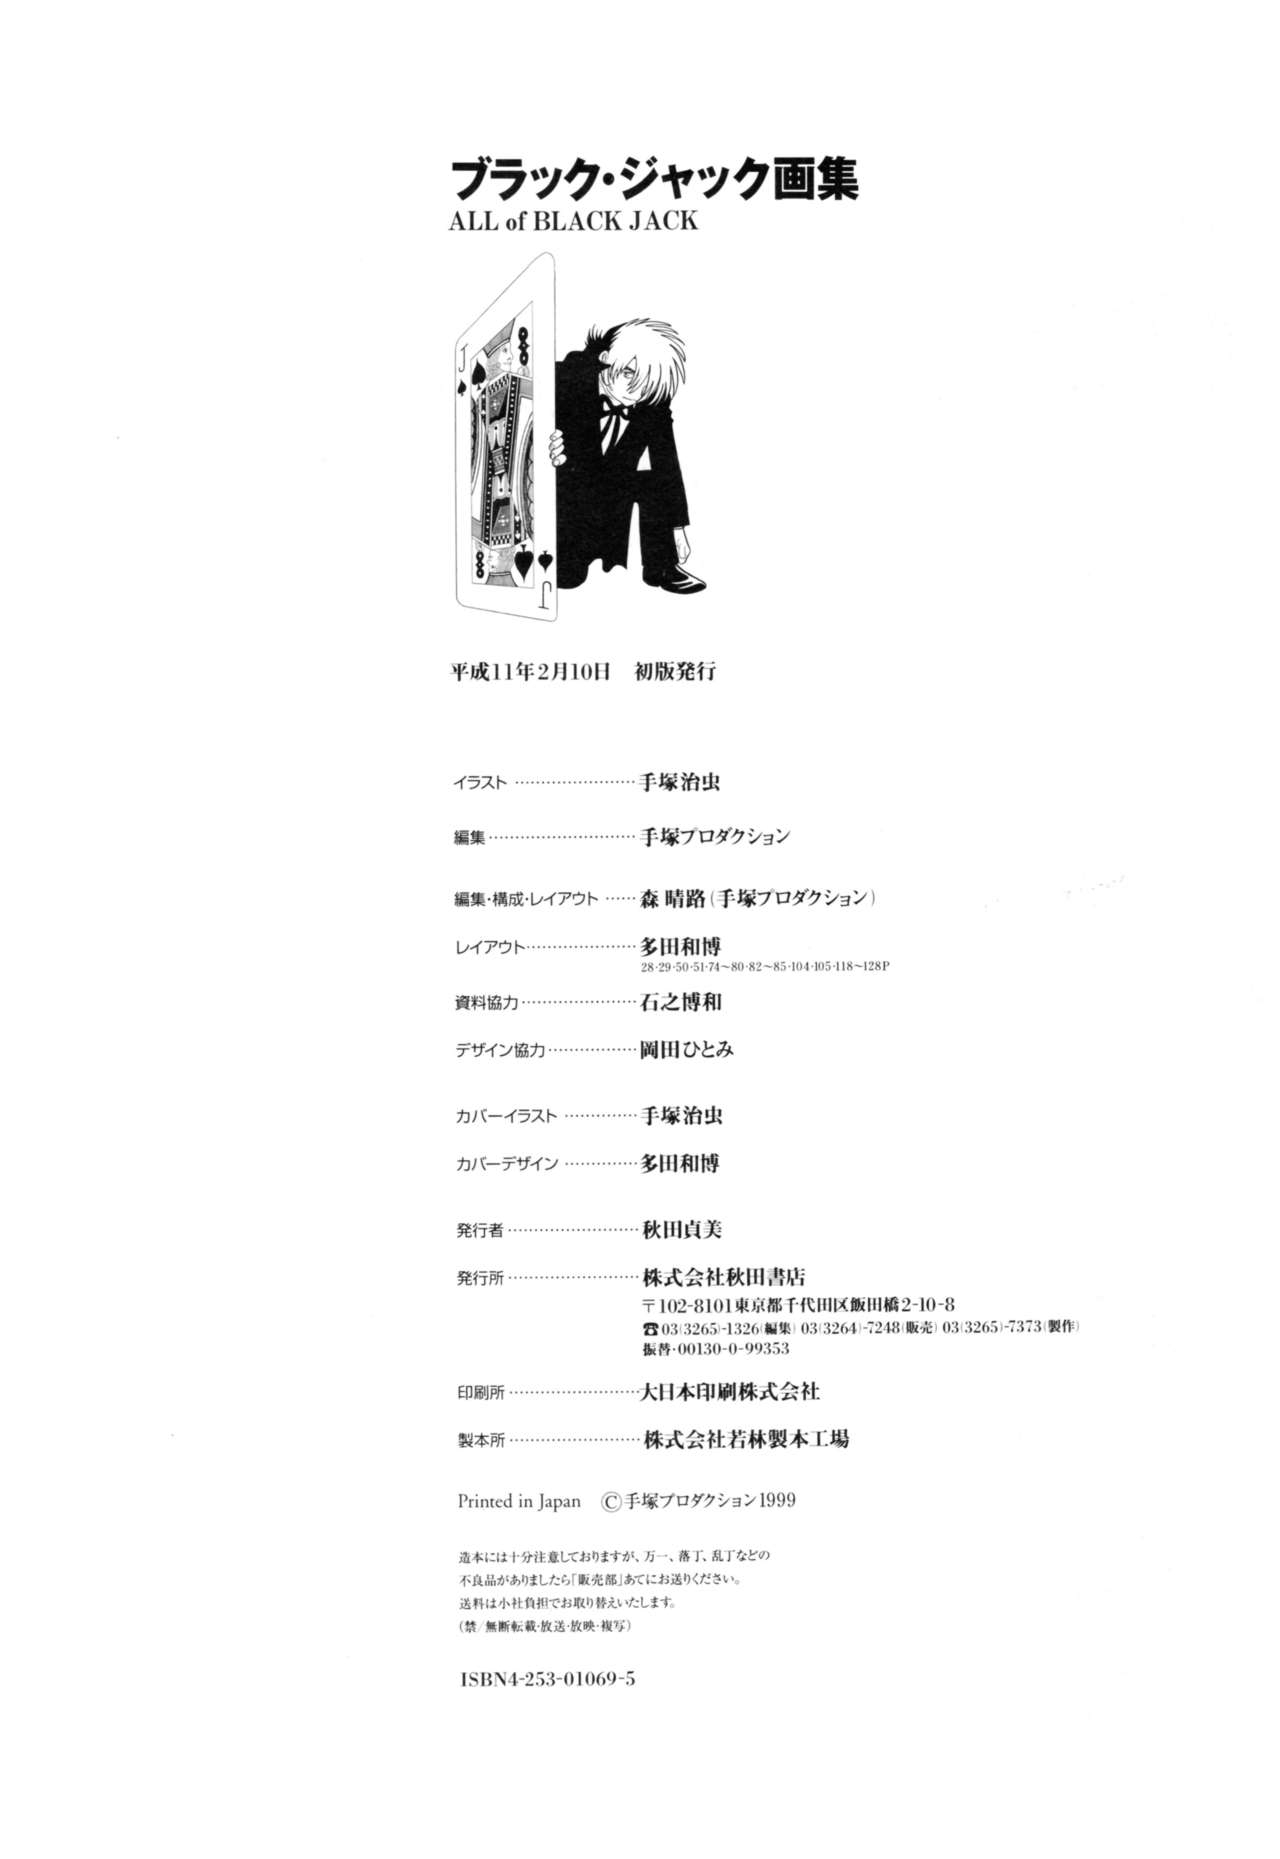 All of Black Jack By Osamu Tezuka 132